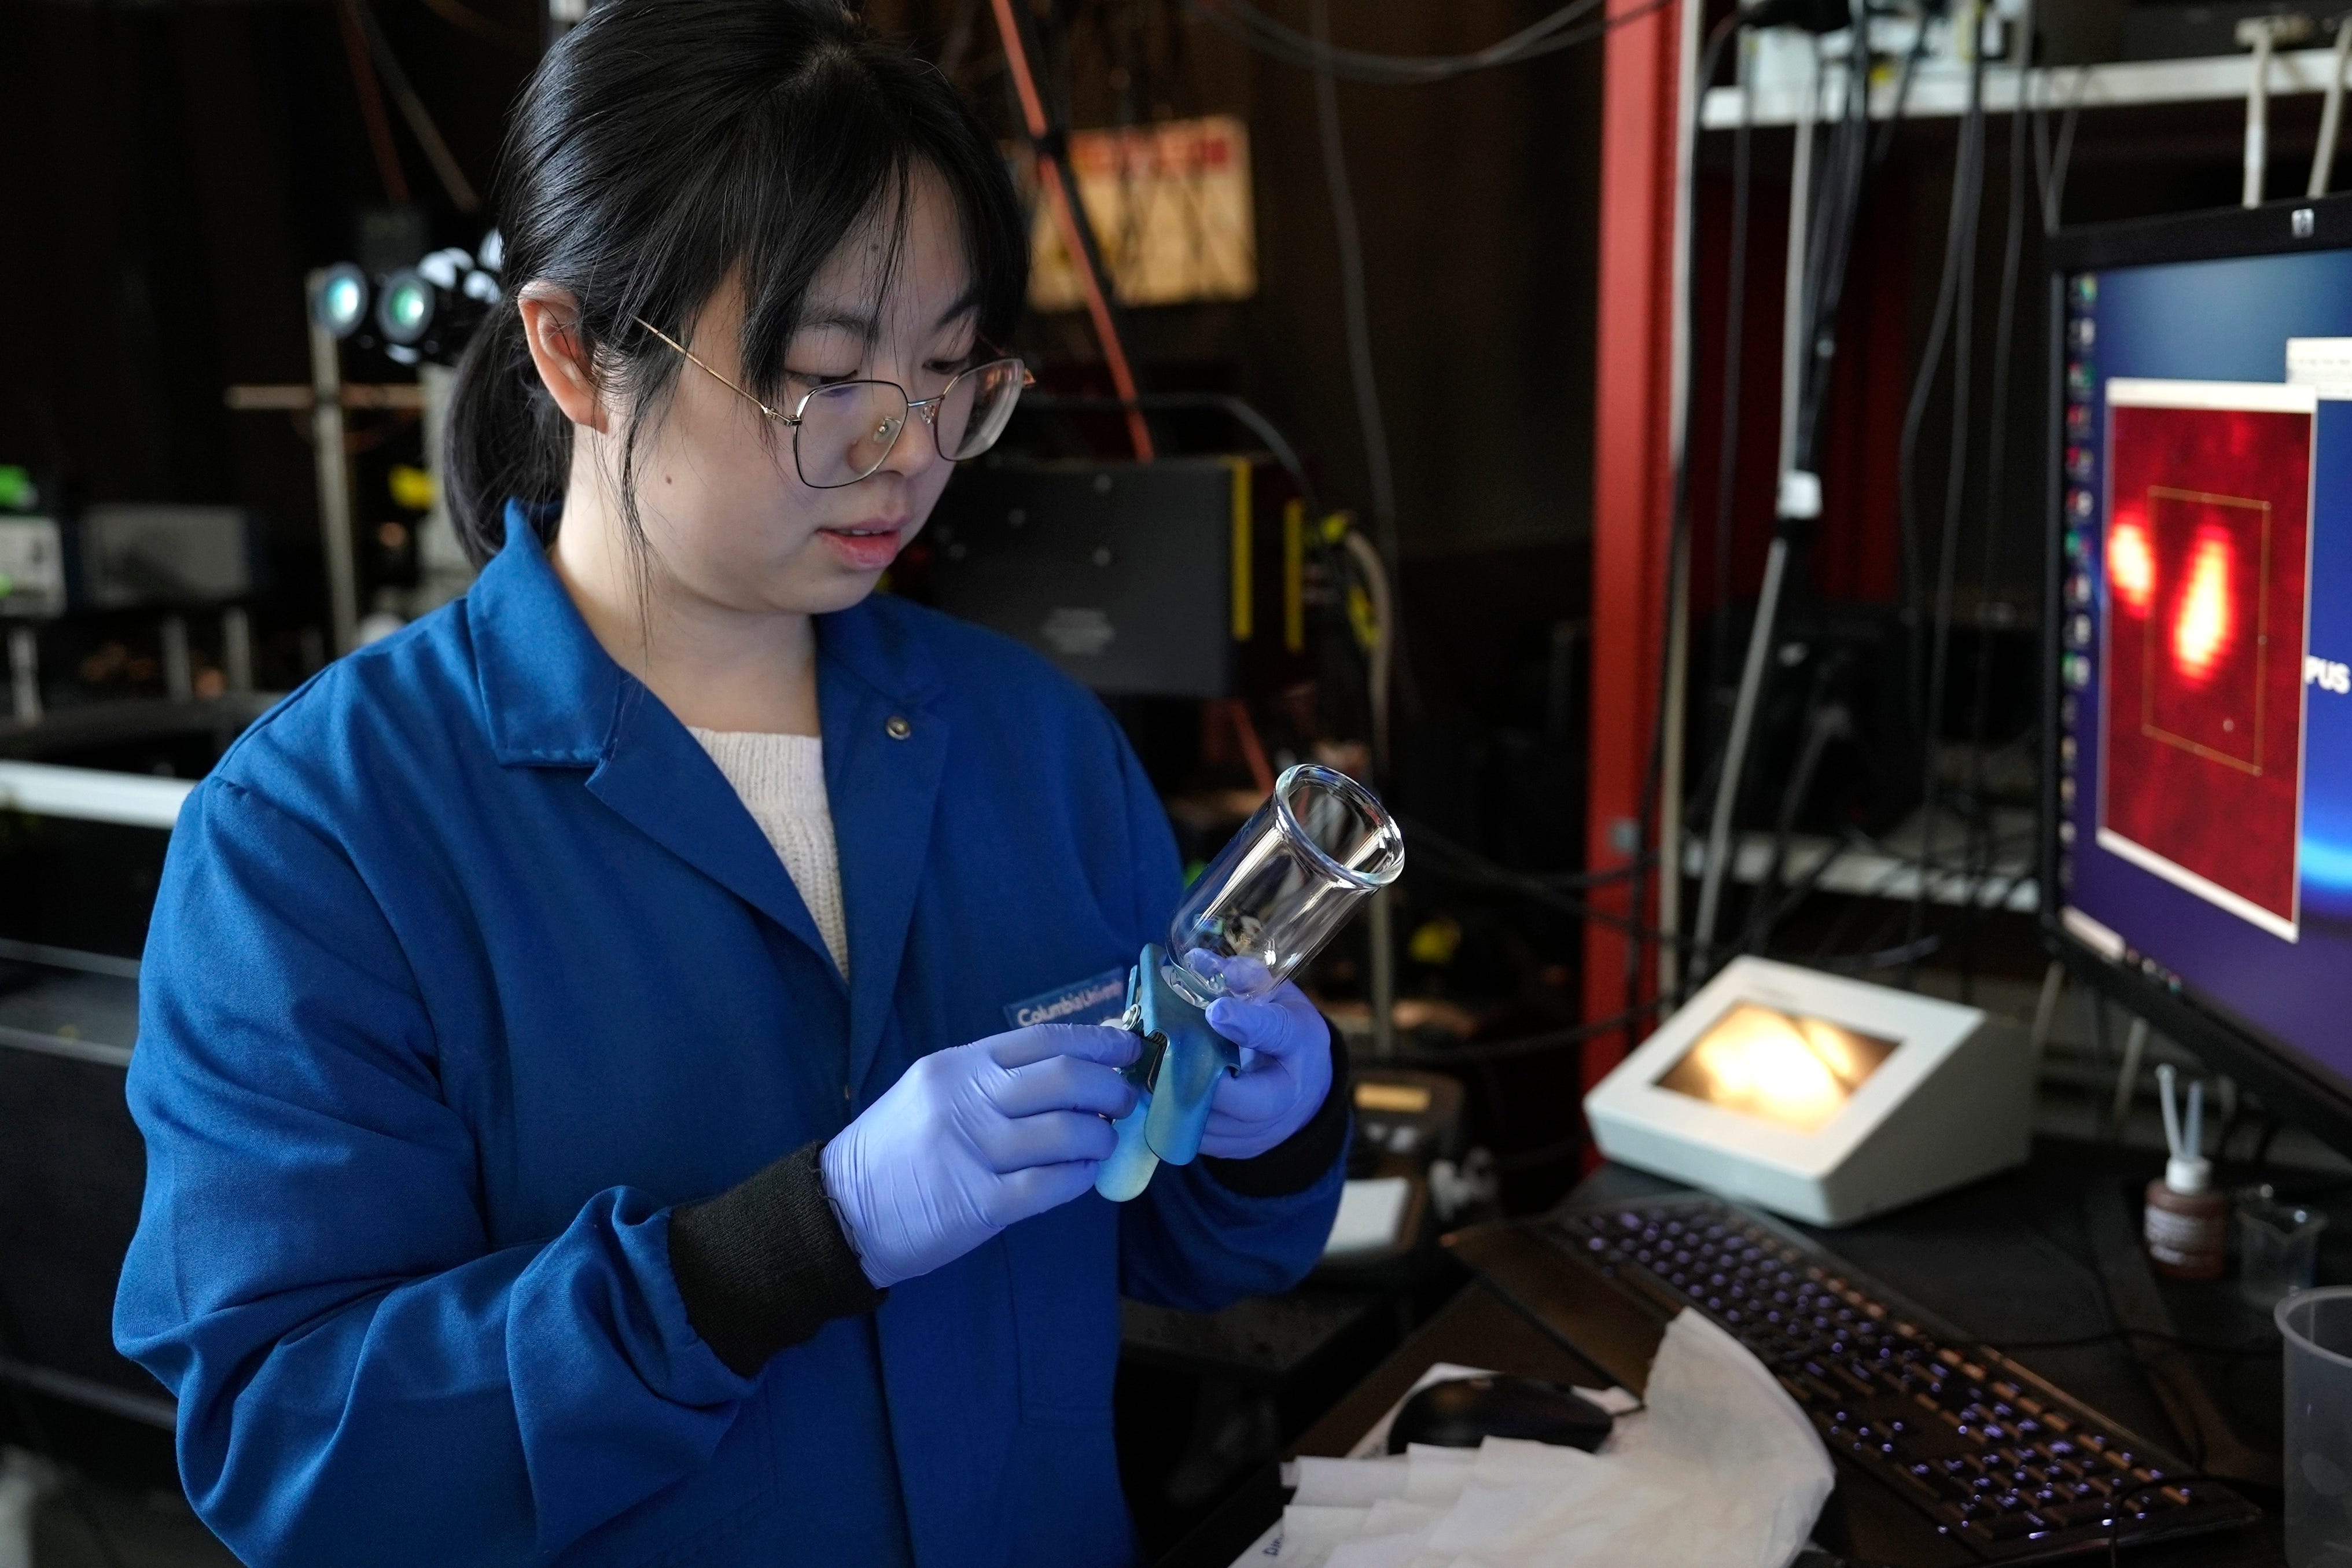 Eine Wissenschaftlerin trägt blaue Handschuhe, während sie eine Probe in einem durchsichtigen Glas betrachtet, die sie gerade unter ein Mikroskop legt.